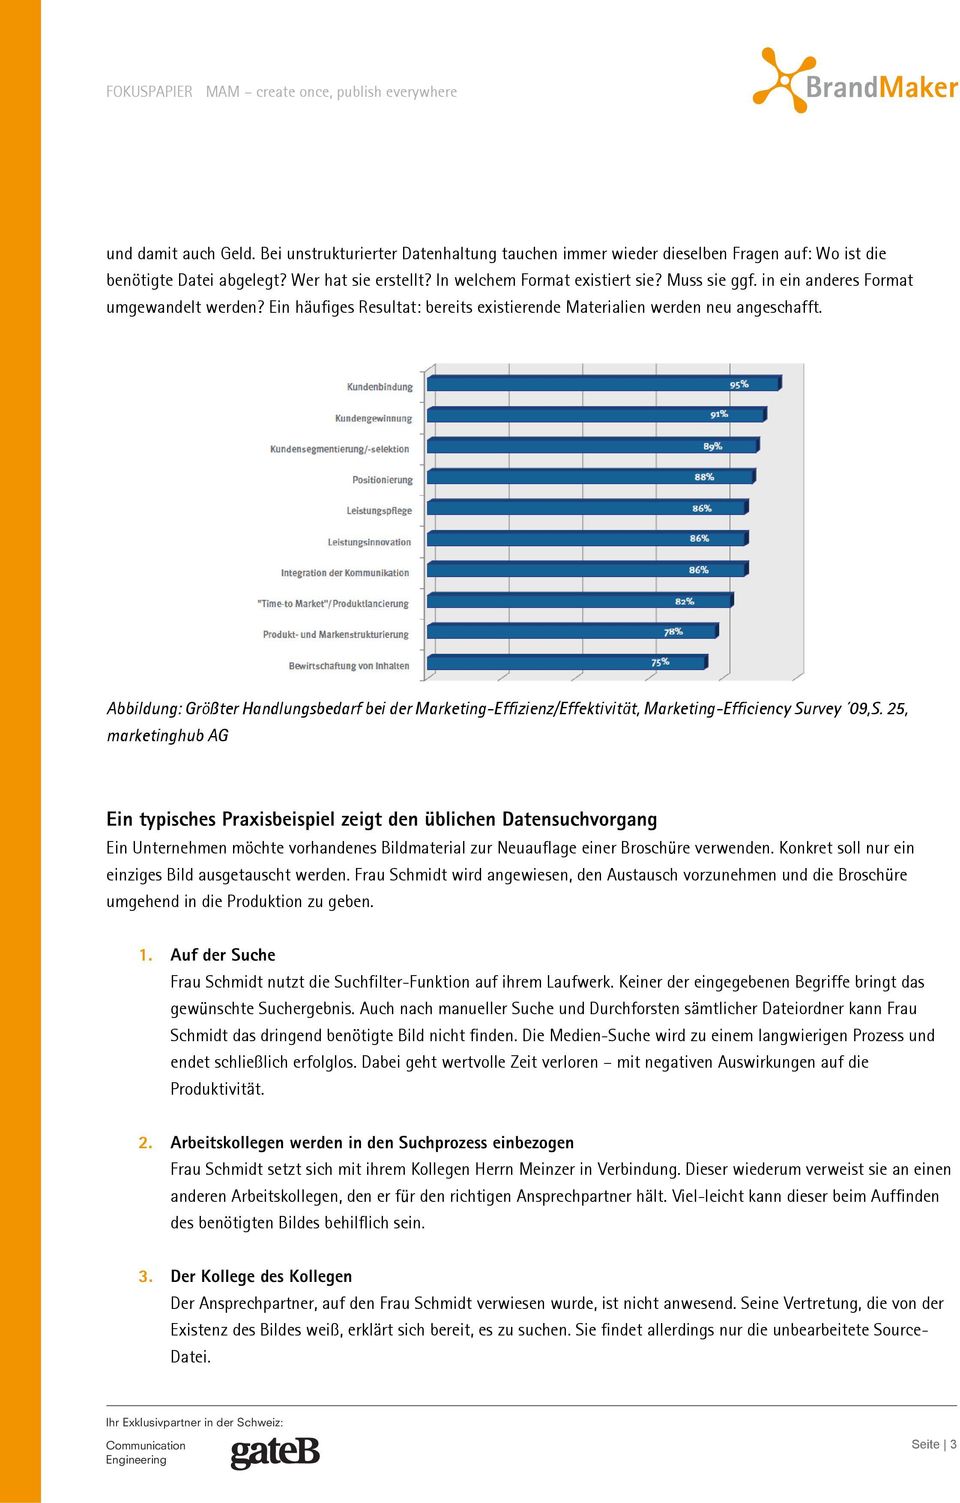 Abbildung: Größter Handlungsbedarf bei der Marketing-Effizienz/Effektivität, Marketing-Efficiency Survey 09,S.